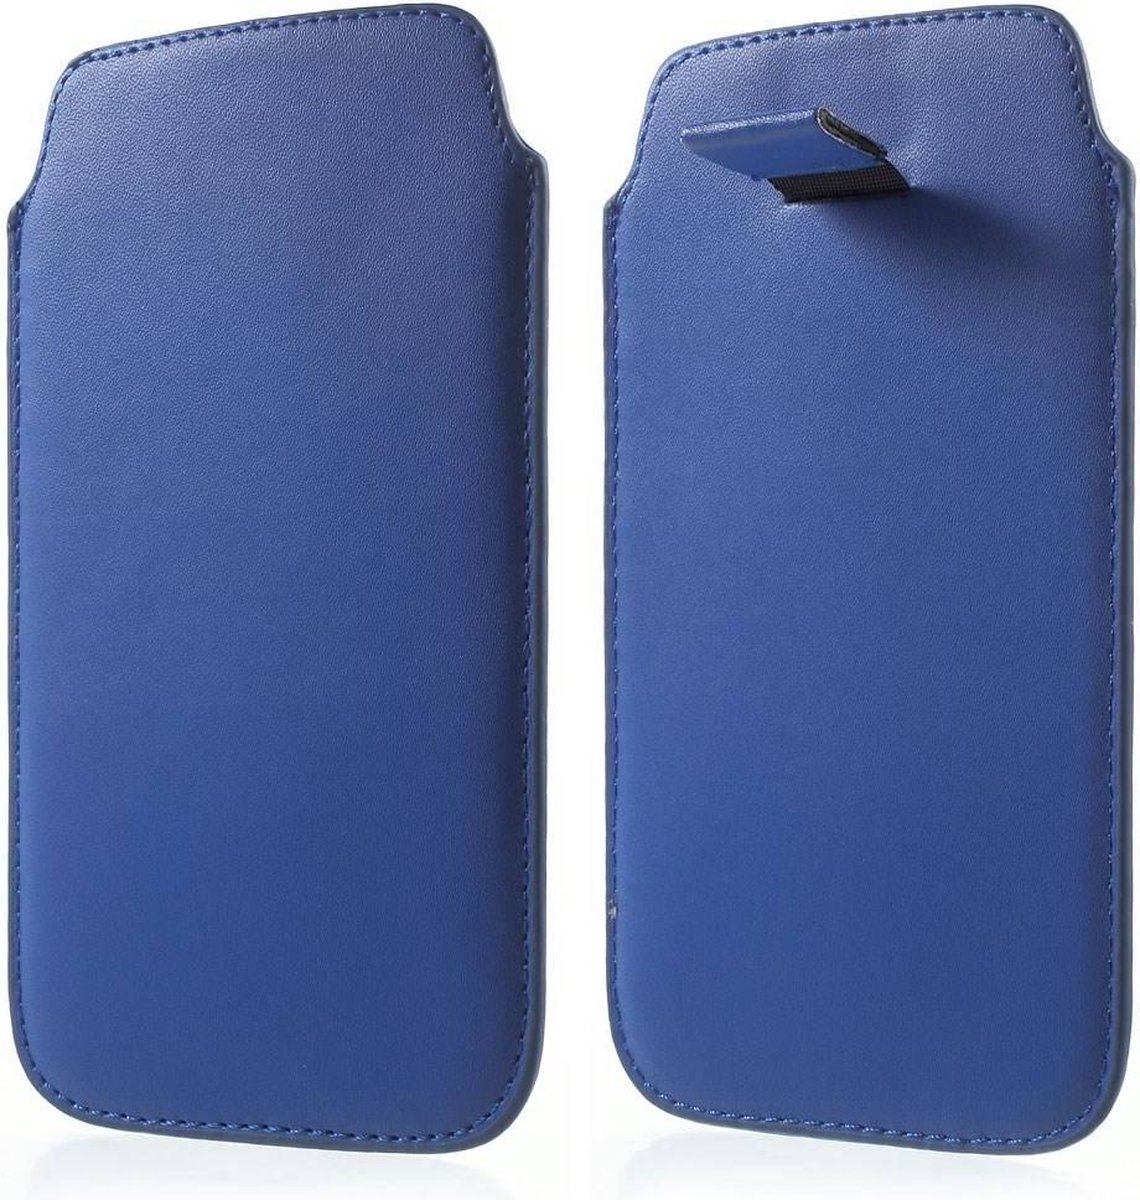 Samsung Galaxy S6 insteekhoes blauw